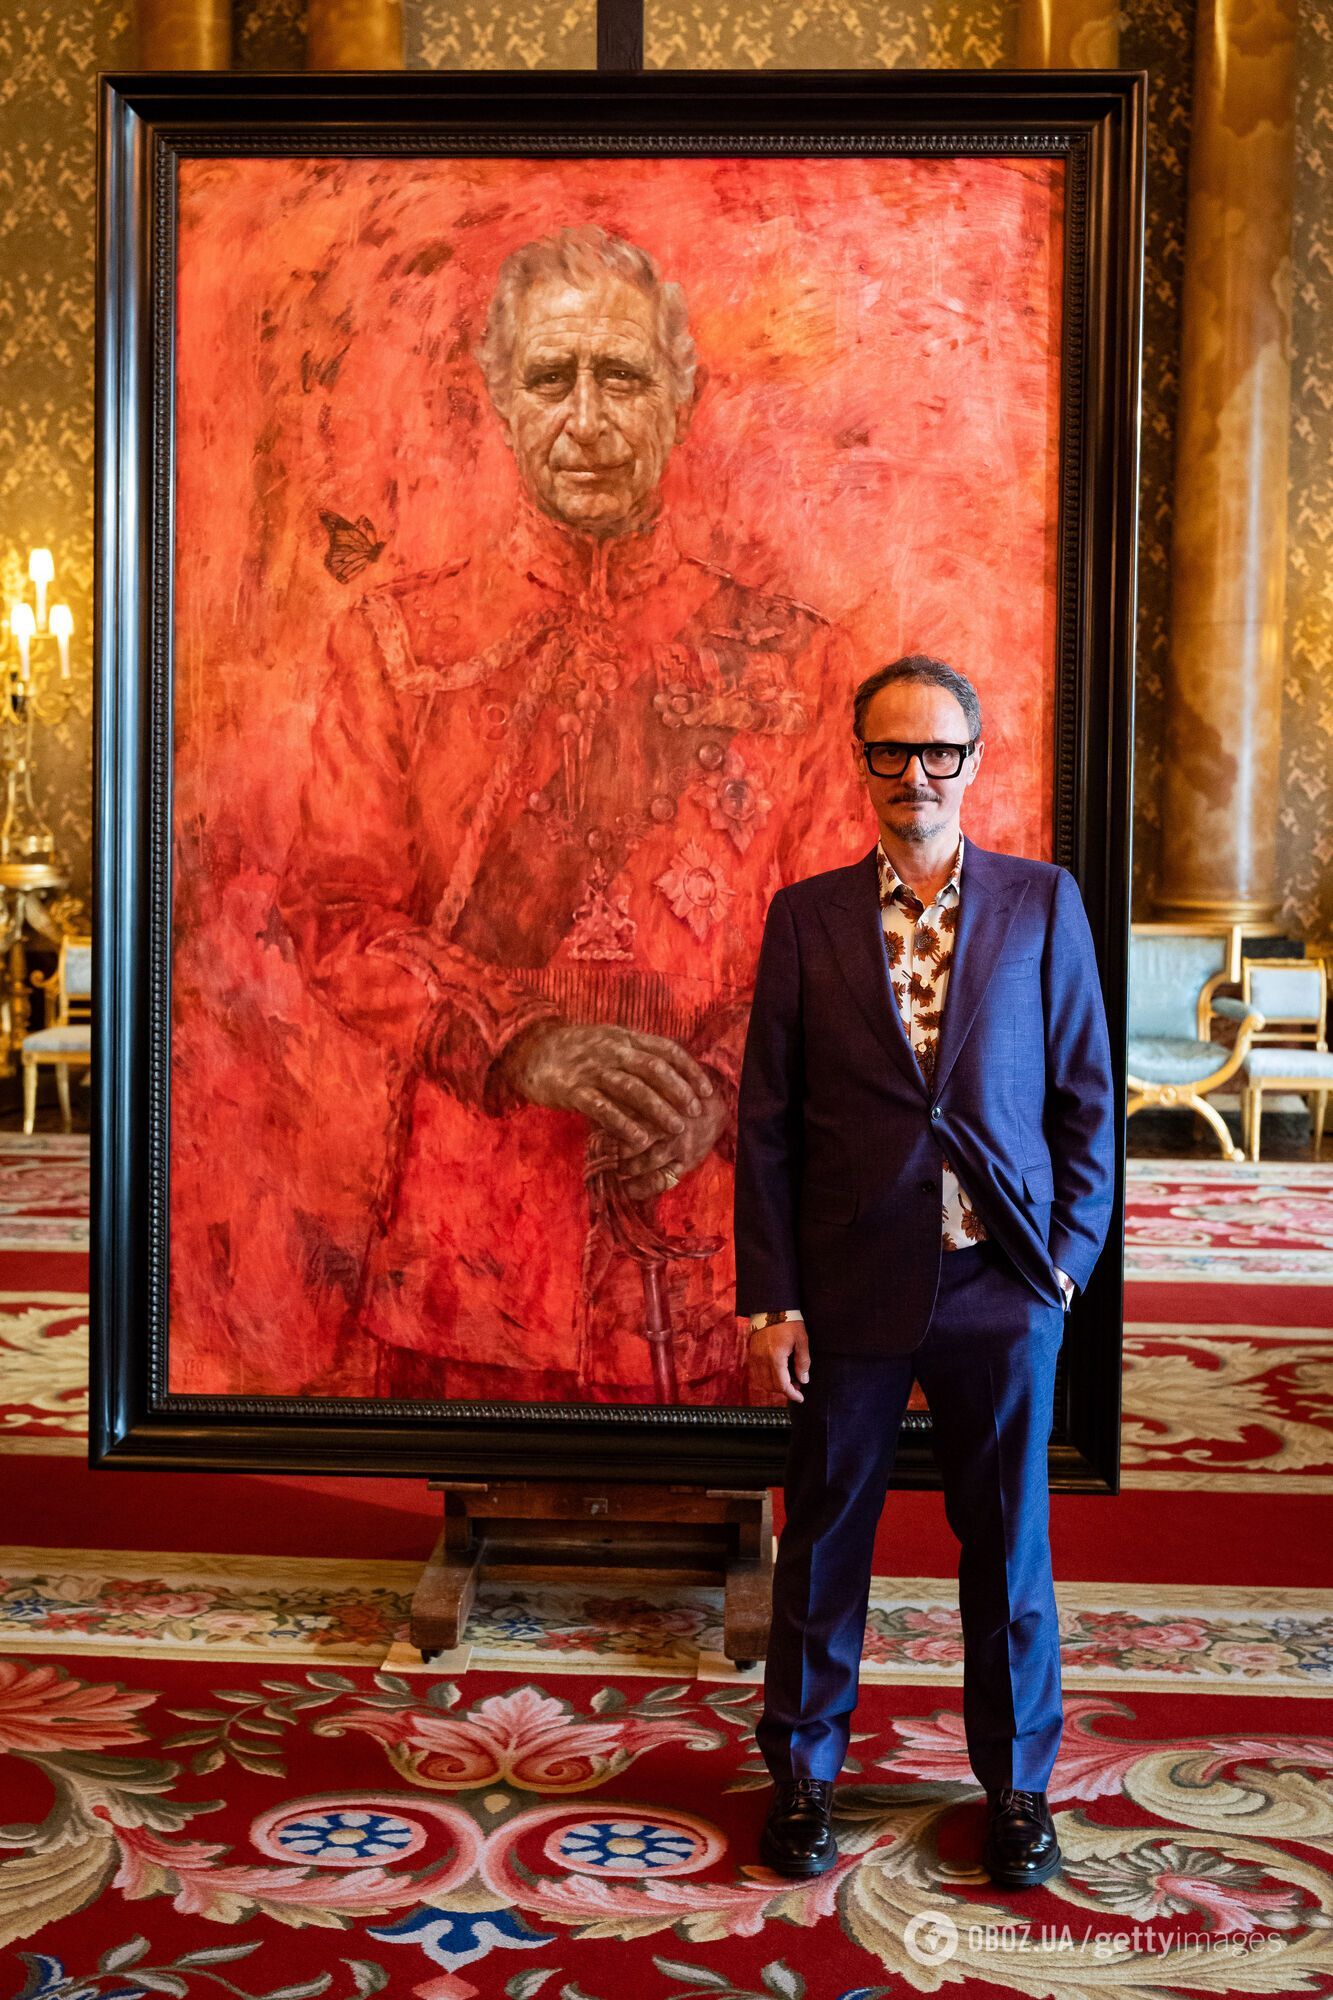 "Наче розлили варення": офіційний портрет короля Чарльза викликав дискусію у мережі. Фото